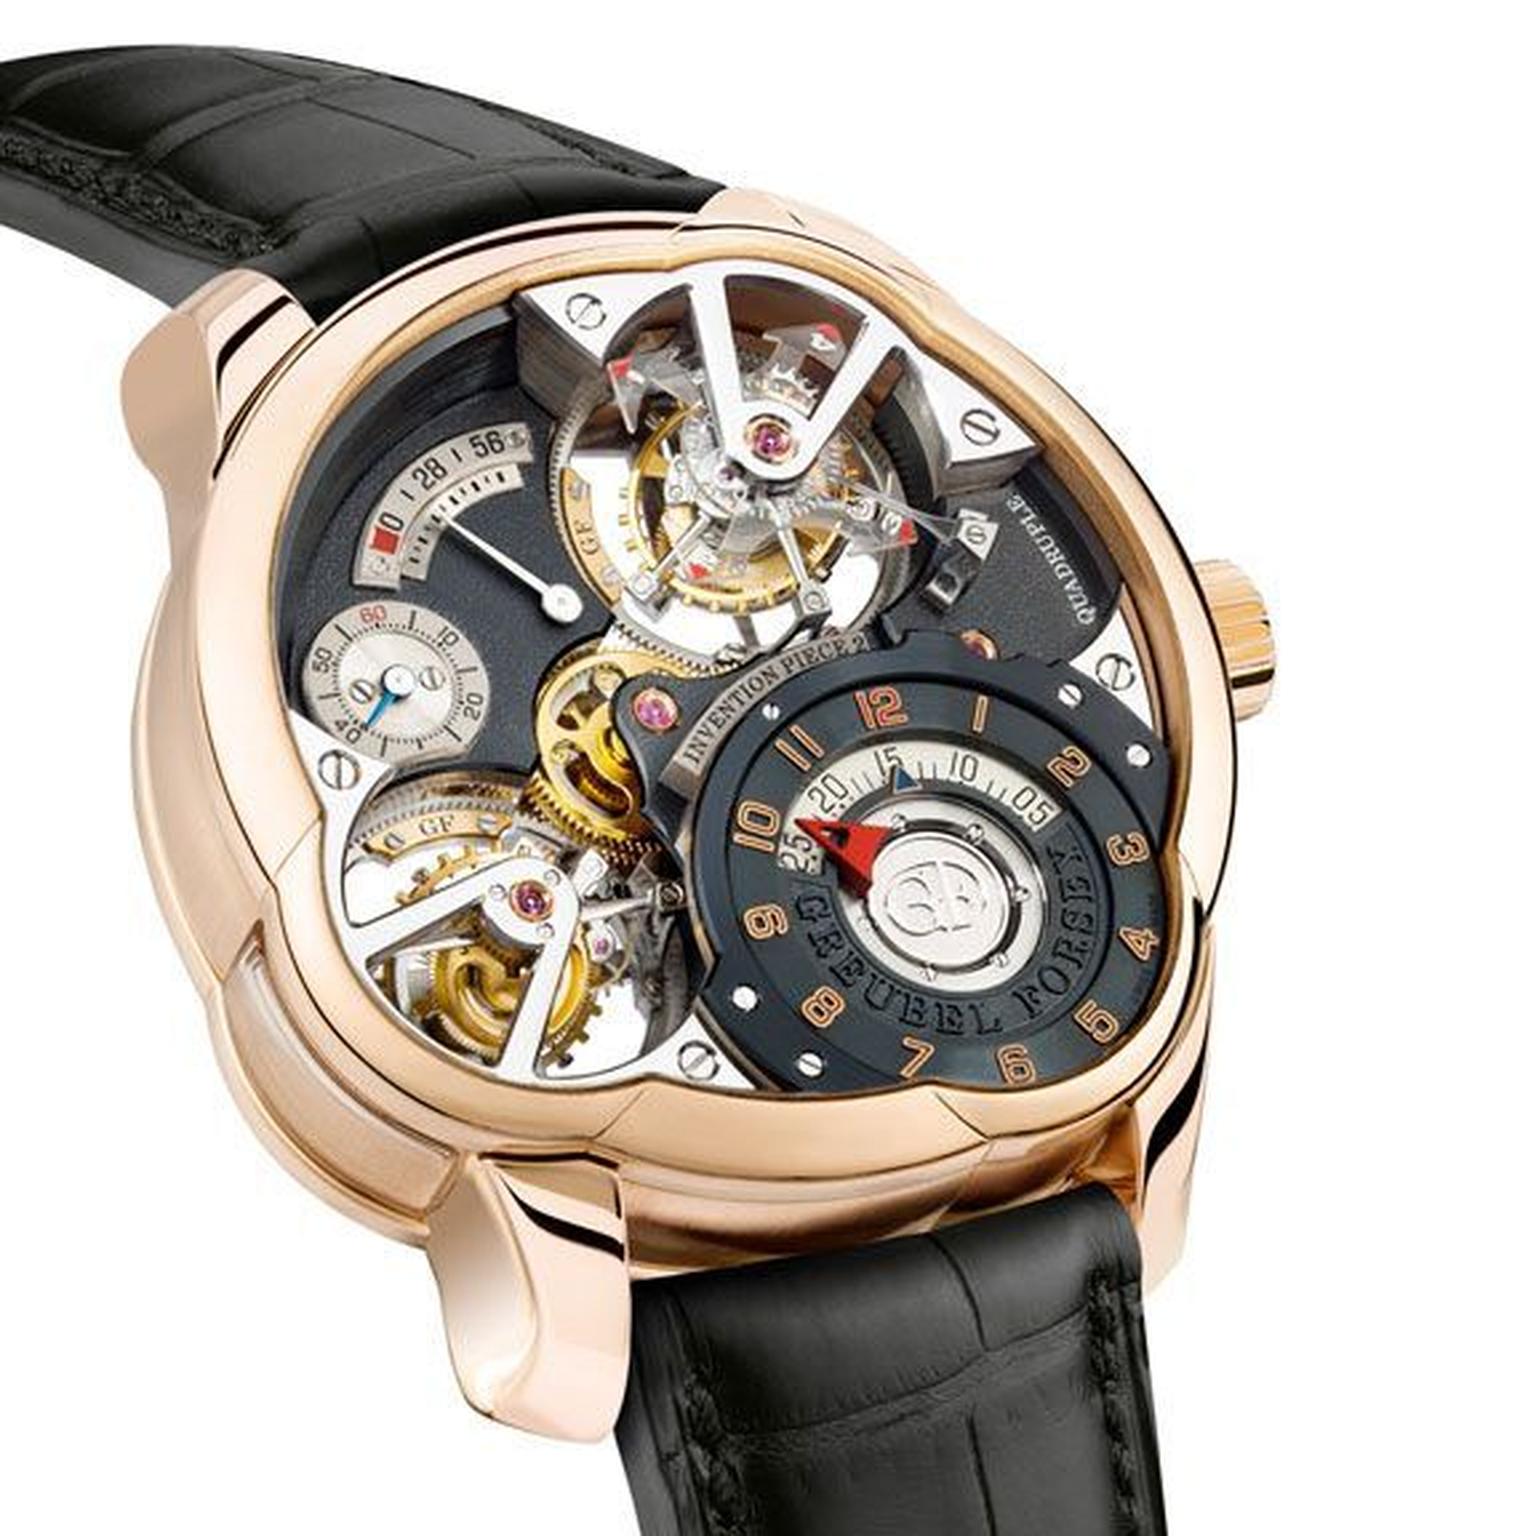 Высокое качество швейцарских часов. Patek Philippe с турбийоном. Greubel Forsey. Часы турбийон мужские. Greubel Forsey часы.